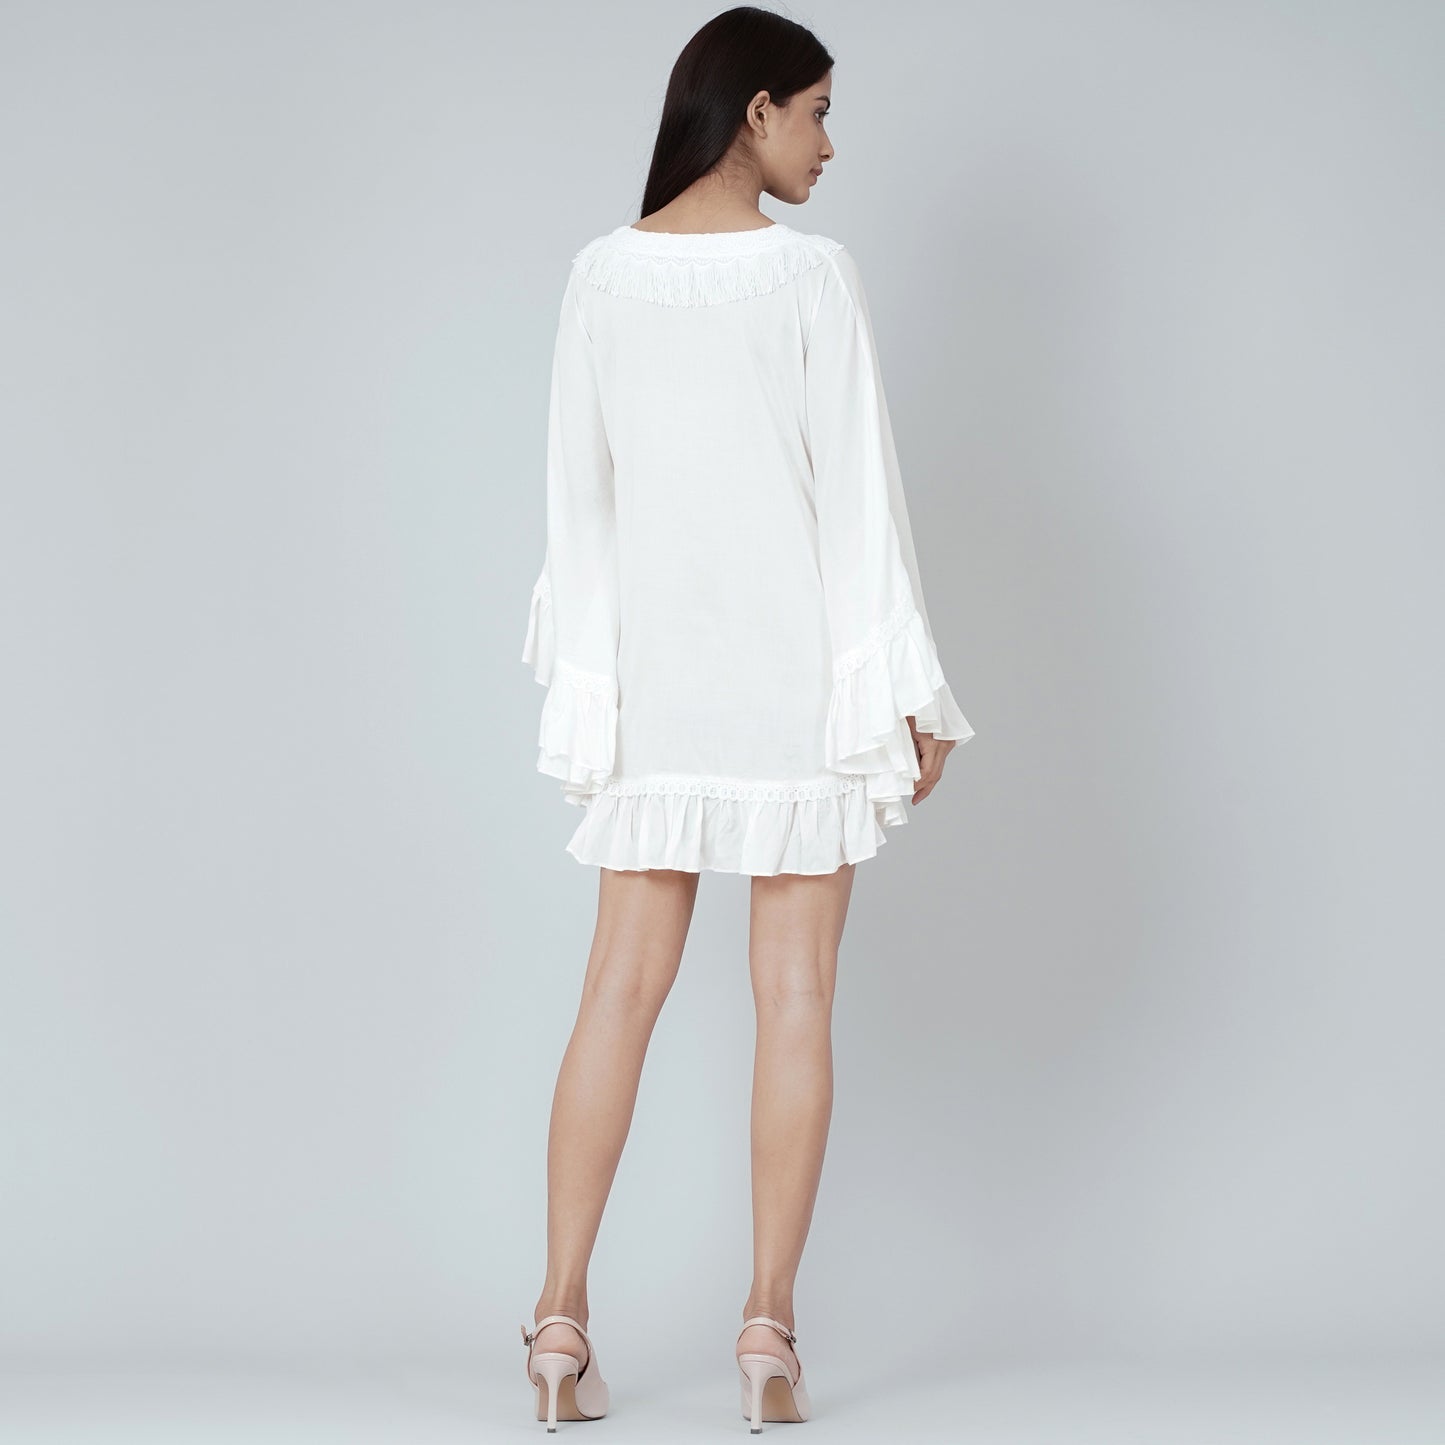 White Ruffle Short Dress